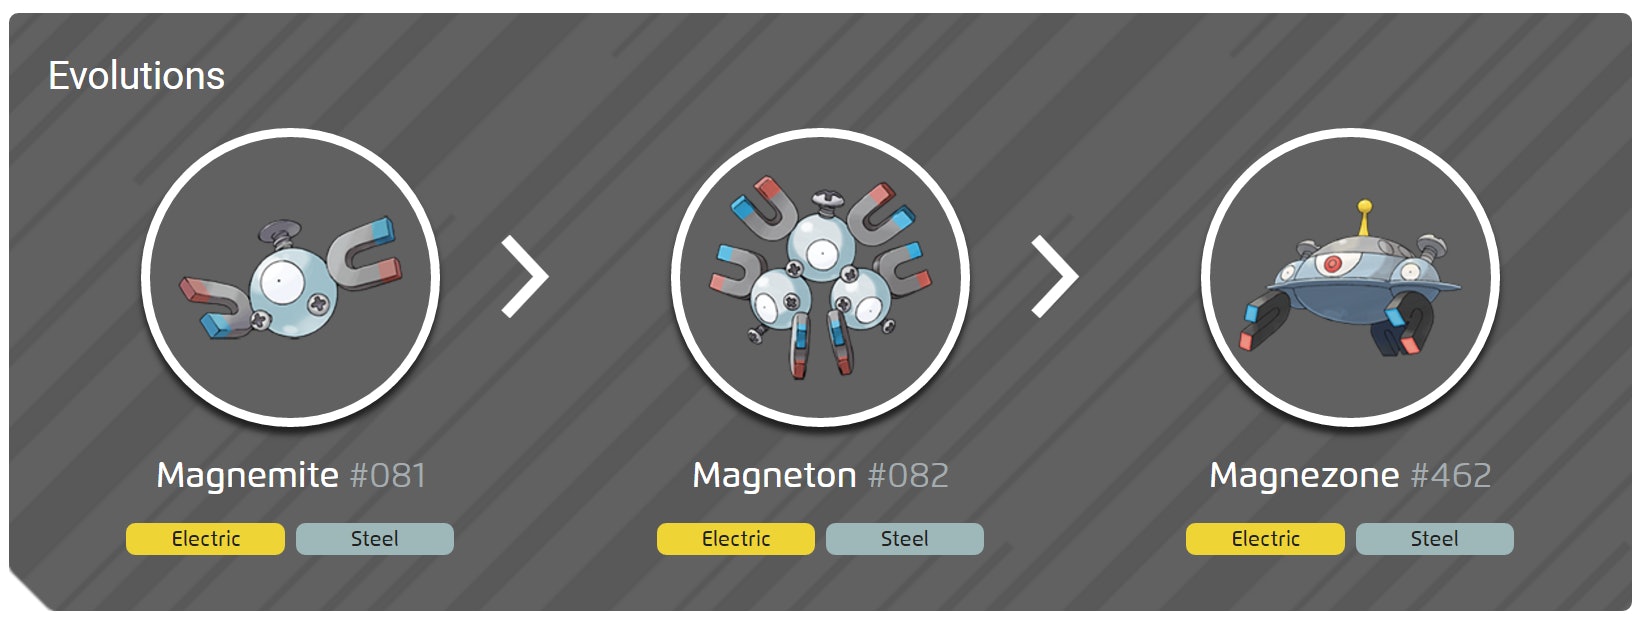 magneton